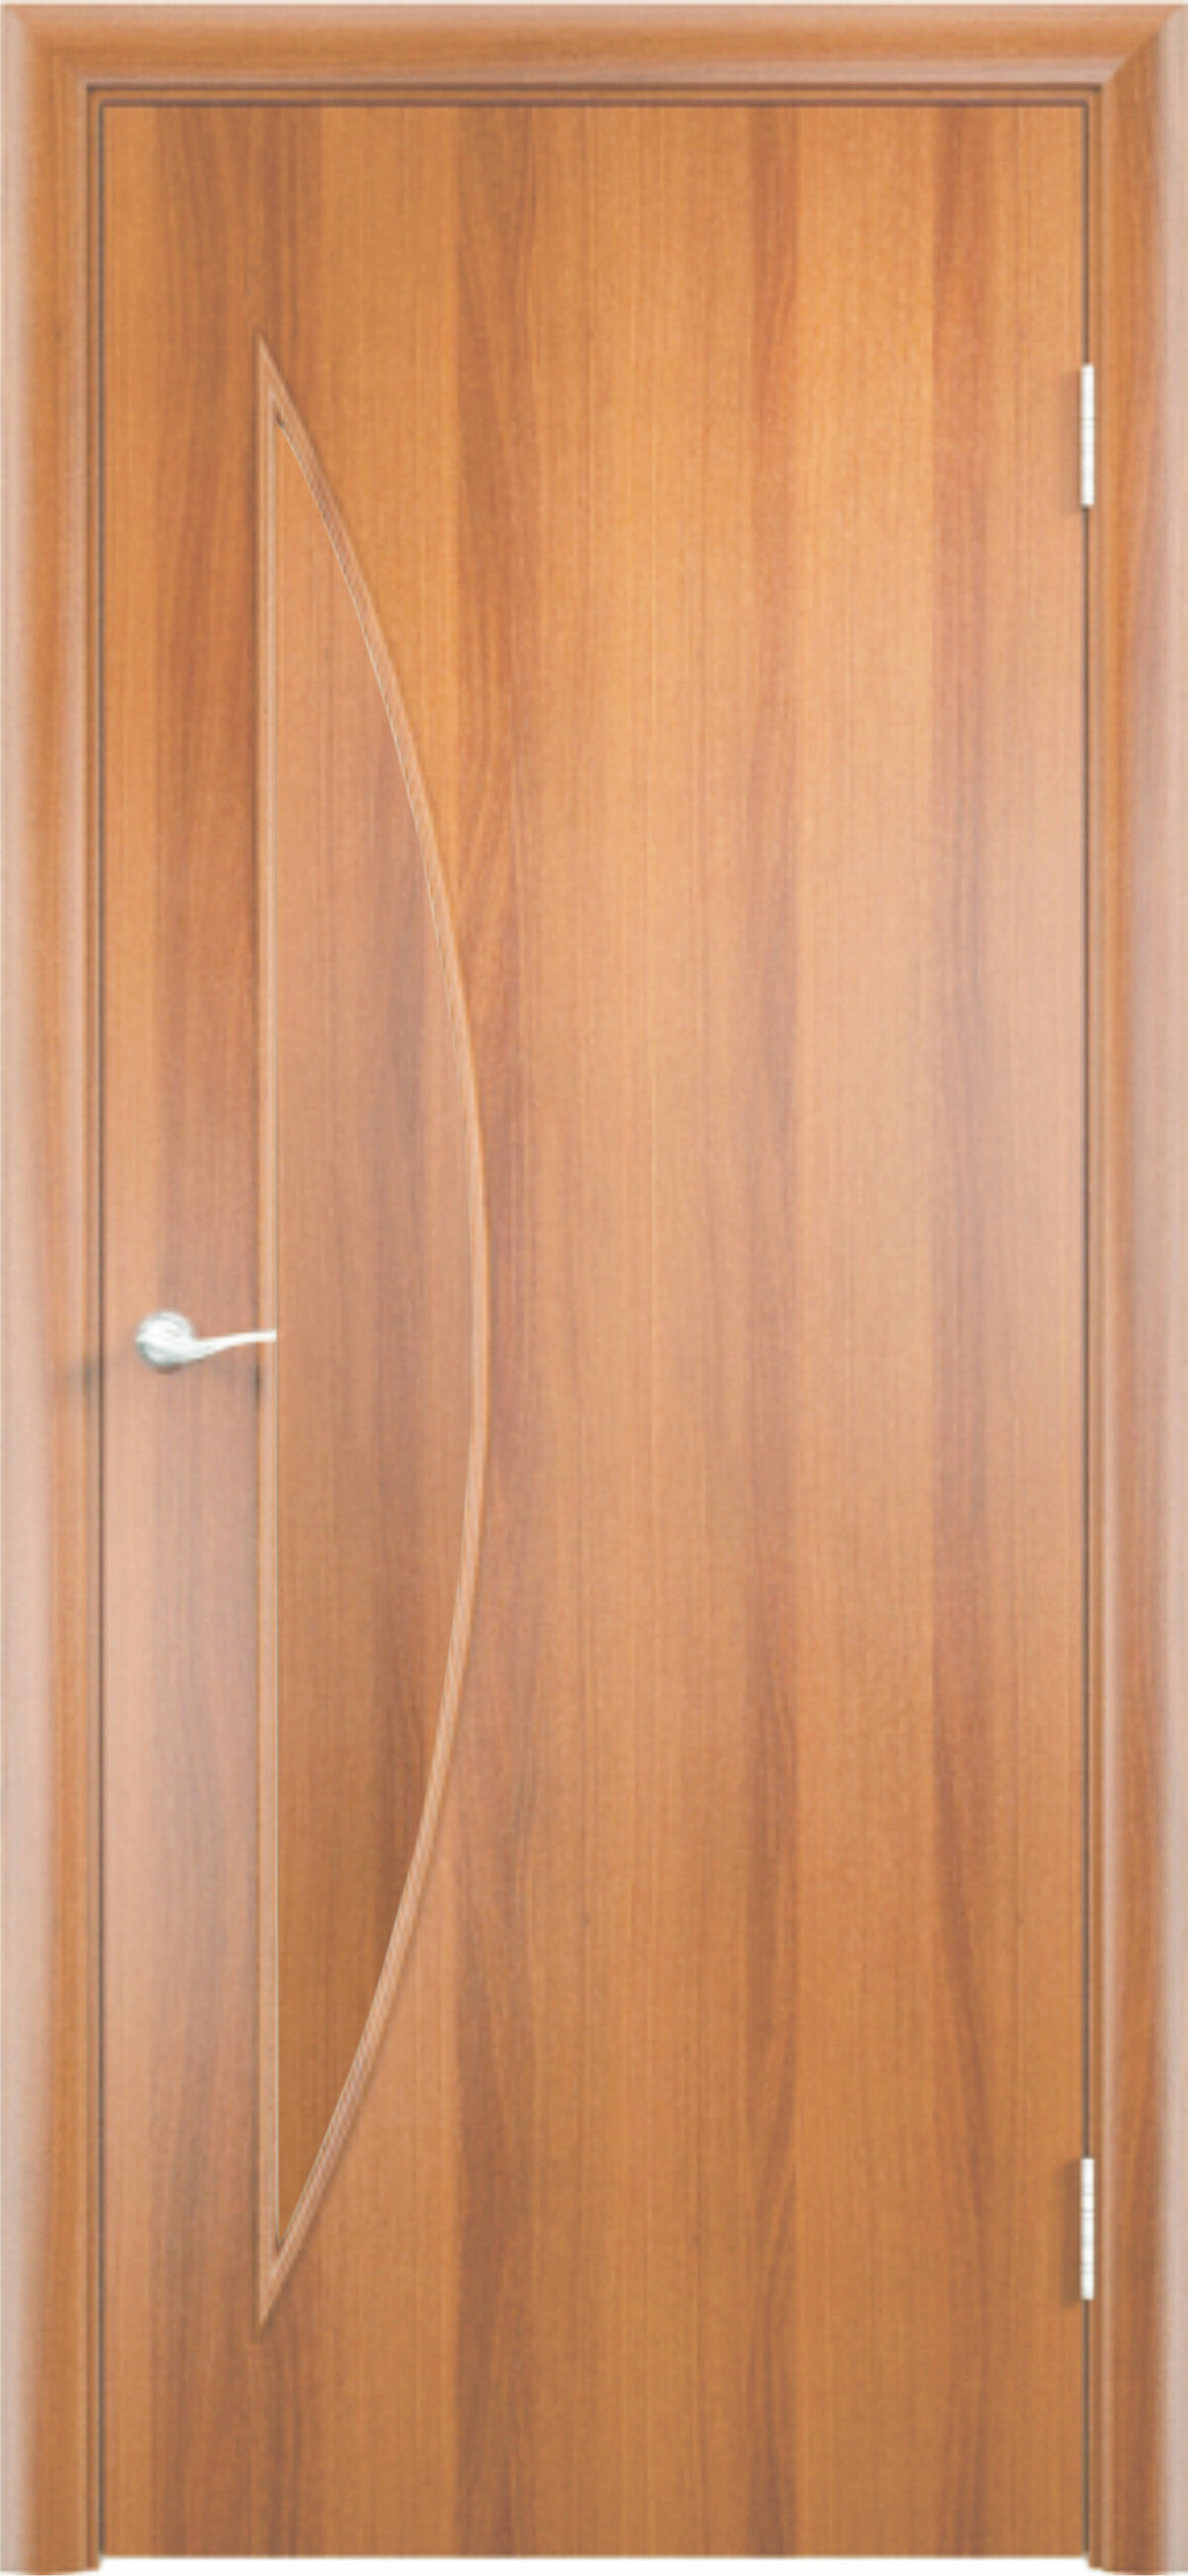 Межкомнатная дверь ВДК Луна ДГ Цвет миланский орех 600x2000 мм (комплект: полотно + коробочный брус + наличники)